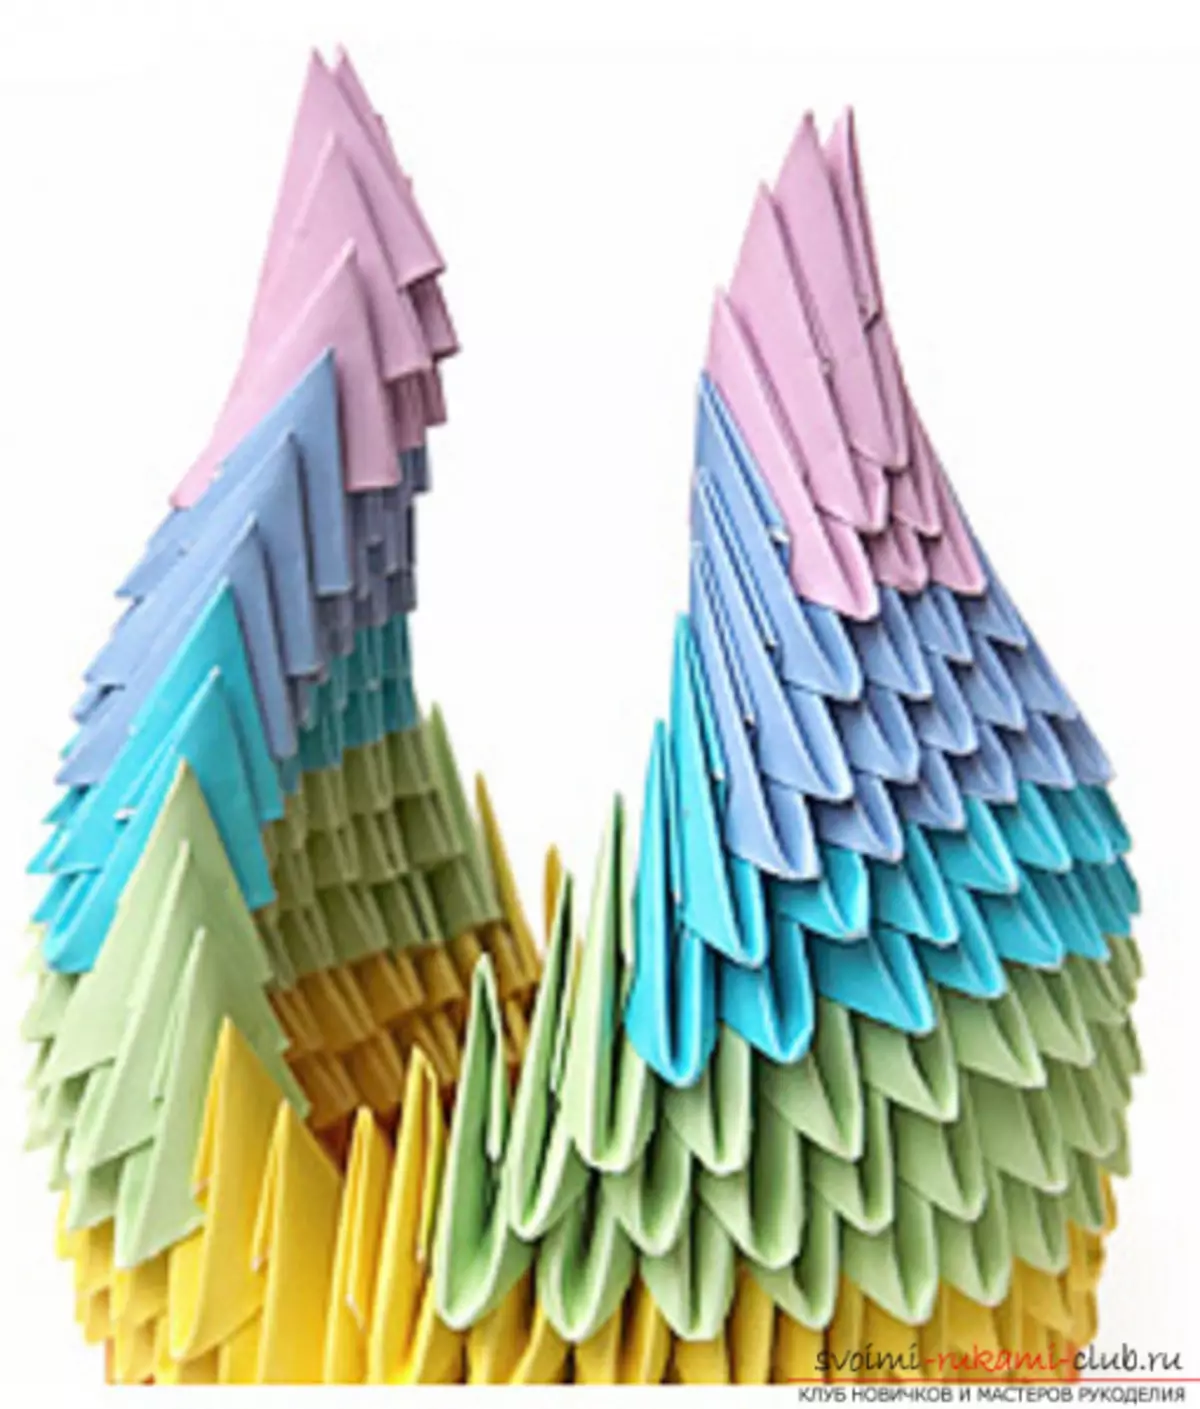 Lebed origami saka kertas: Cara nggawe langkah-langkah karo foto lan video